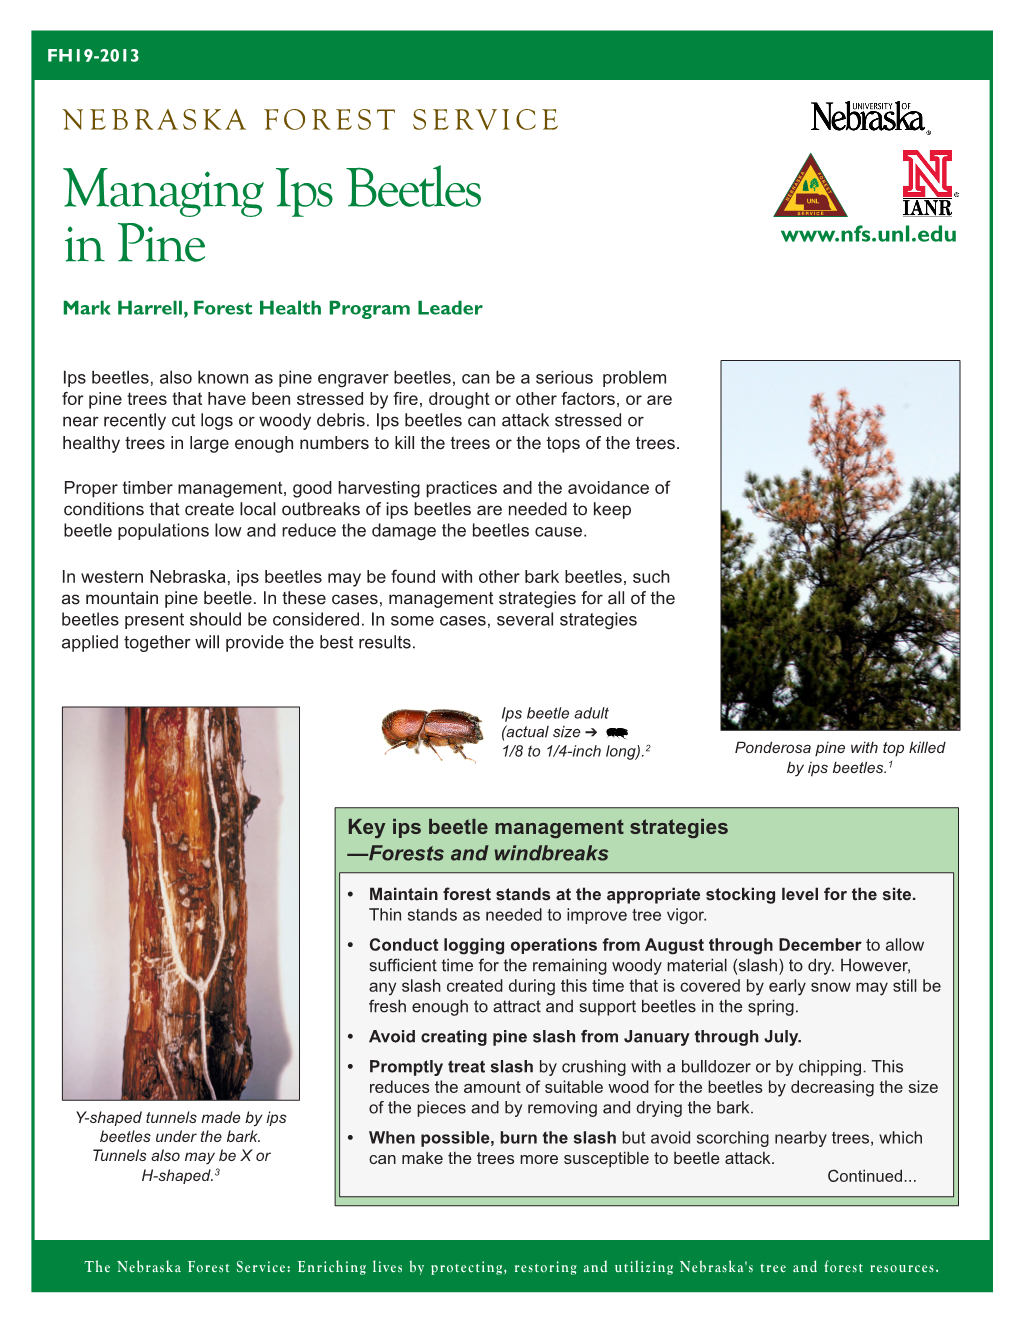 Managing Ips Beetles in Pine